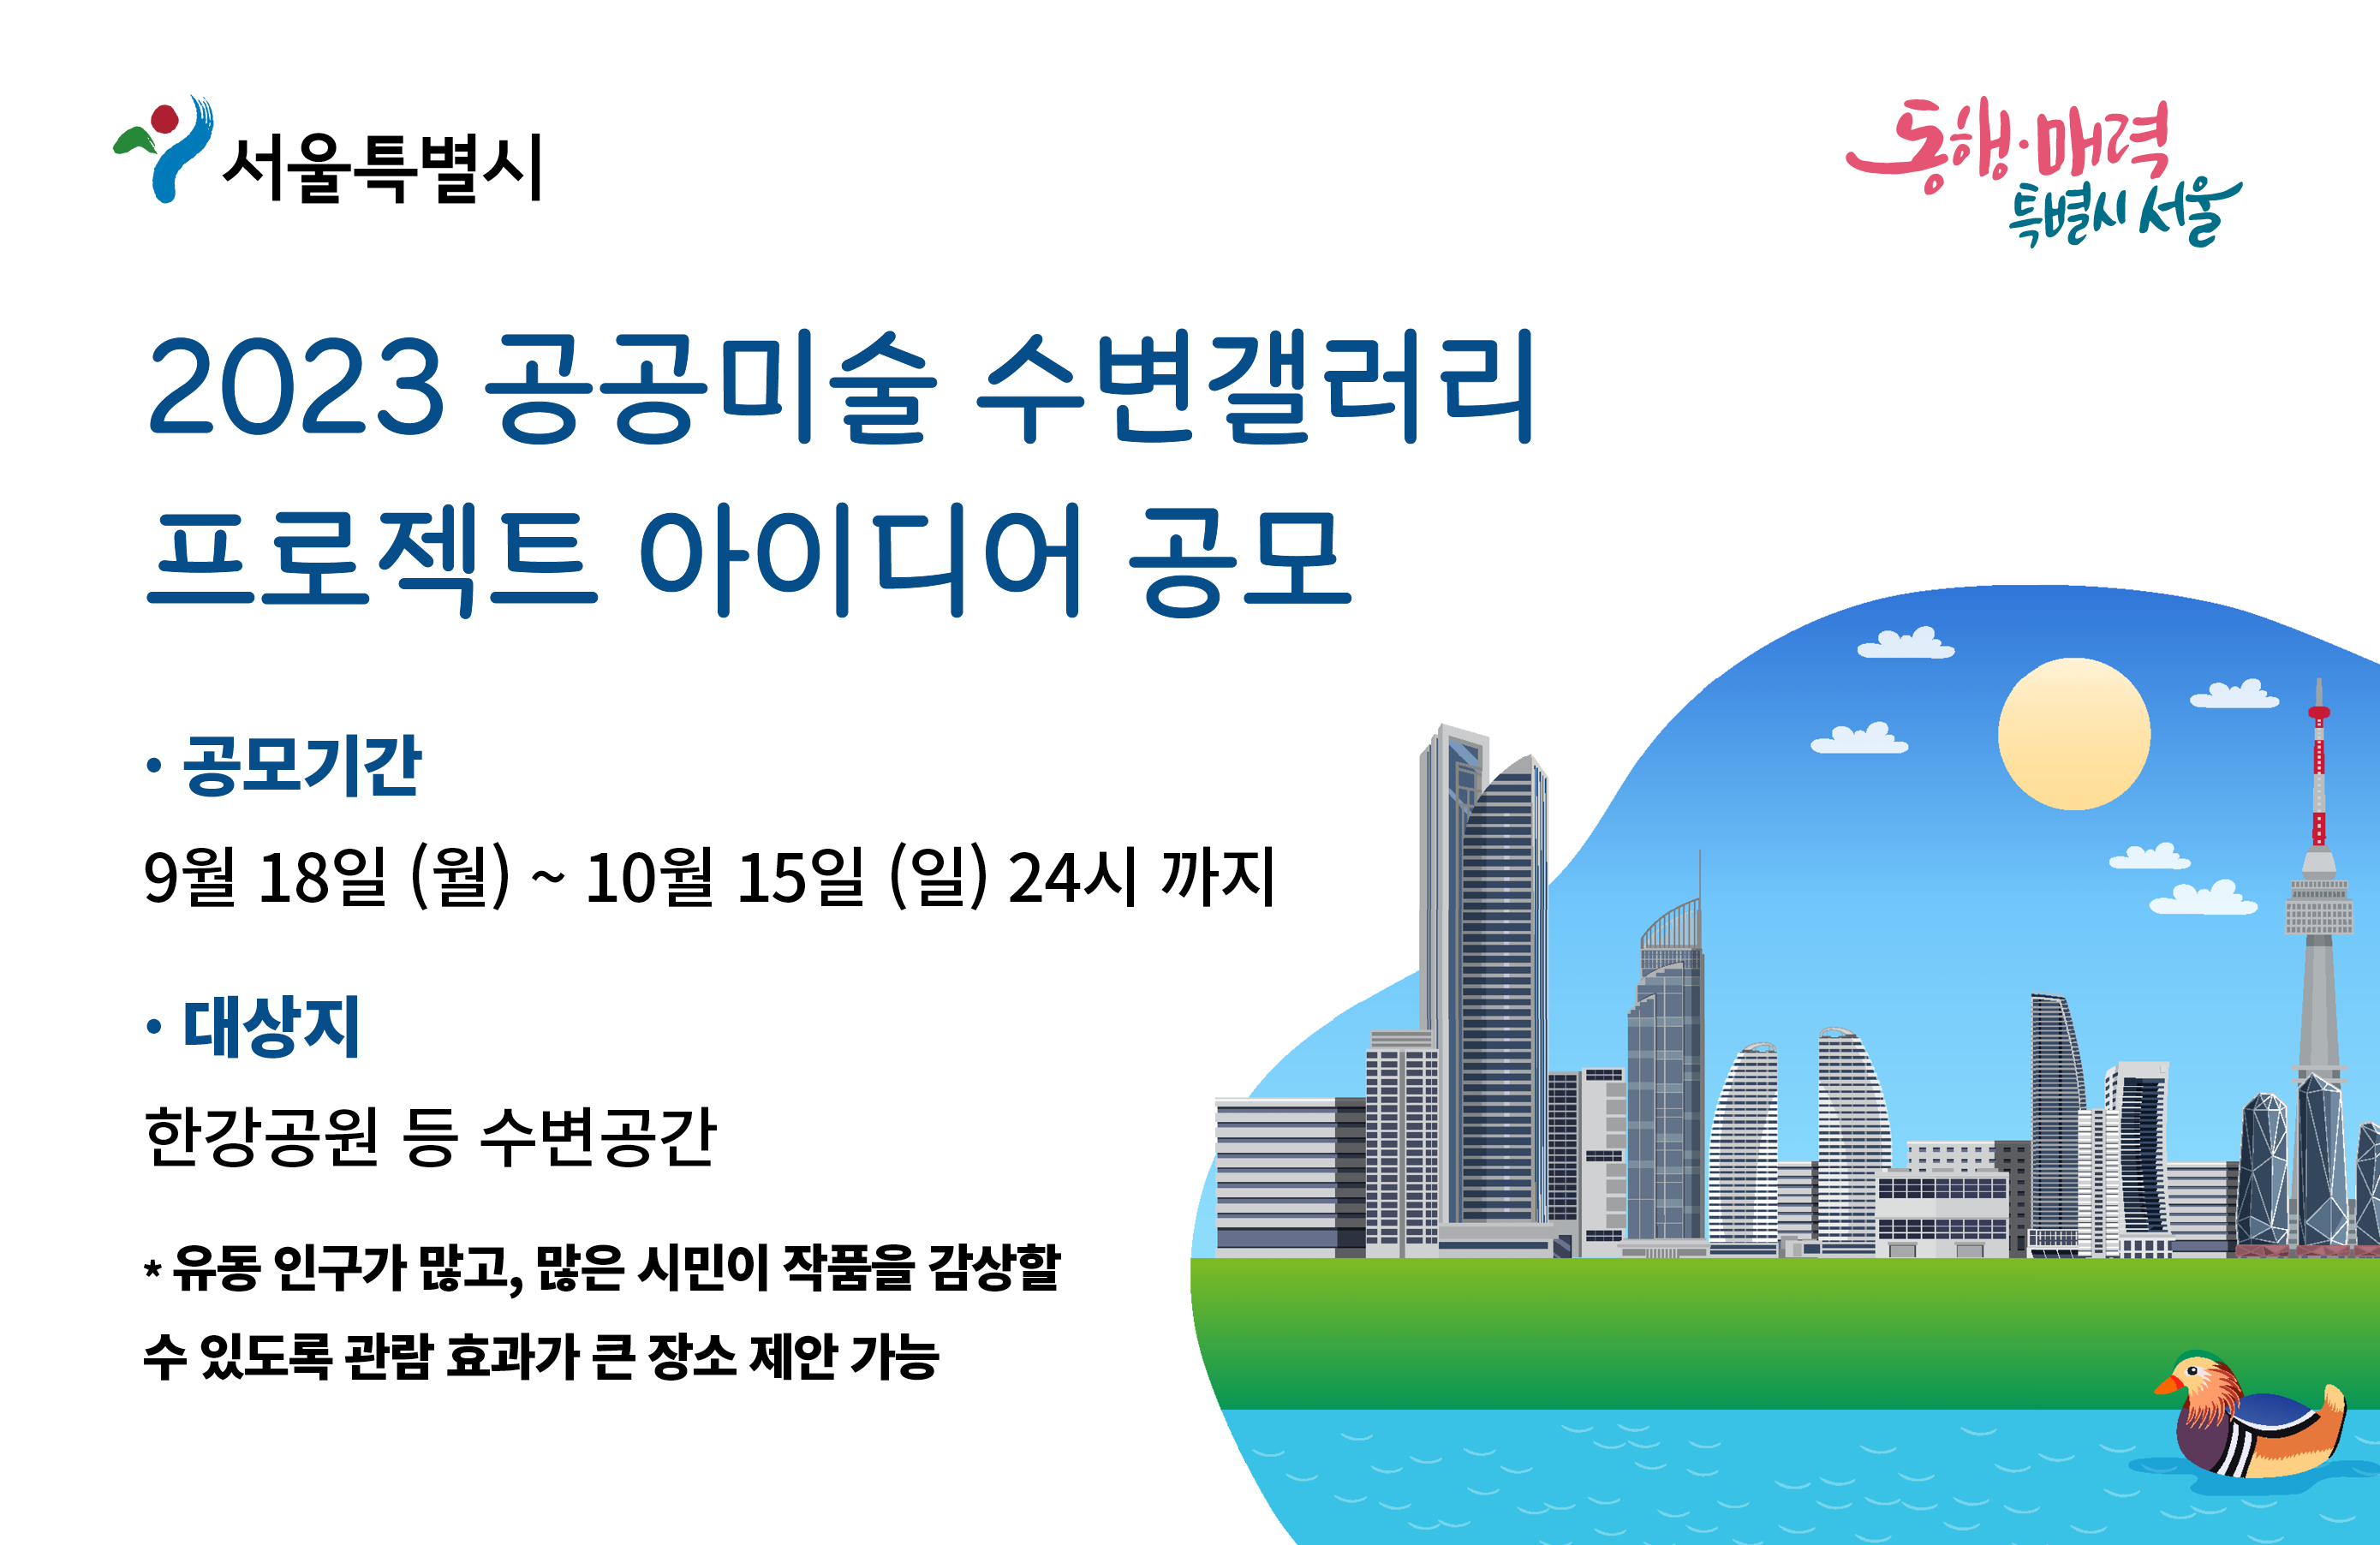 2023 공공미술 수변갤러리 프로젝트 아이디어 공모